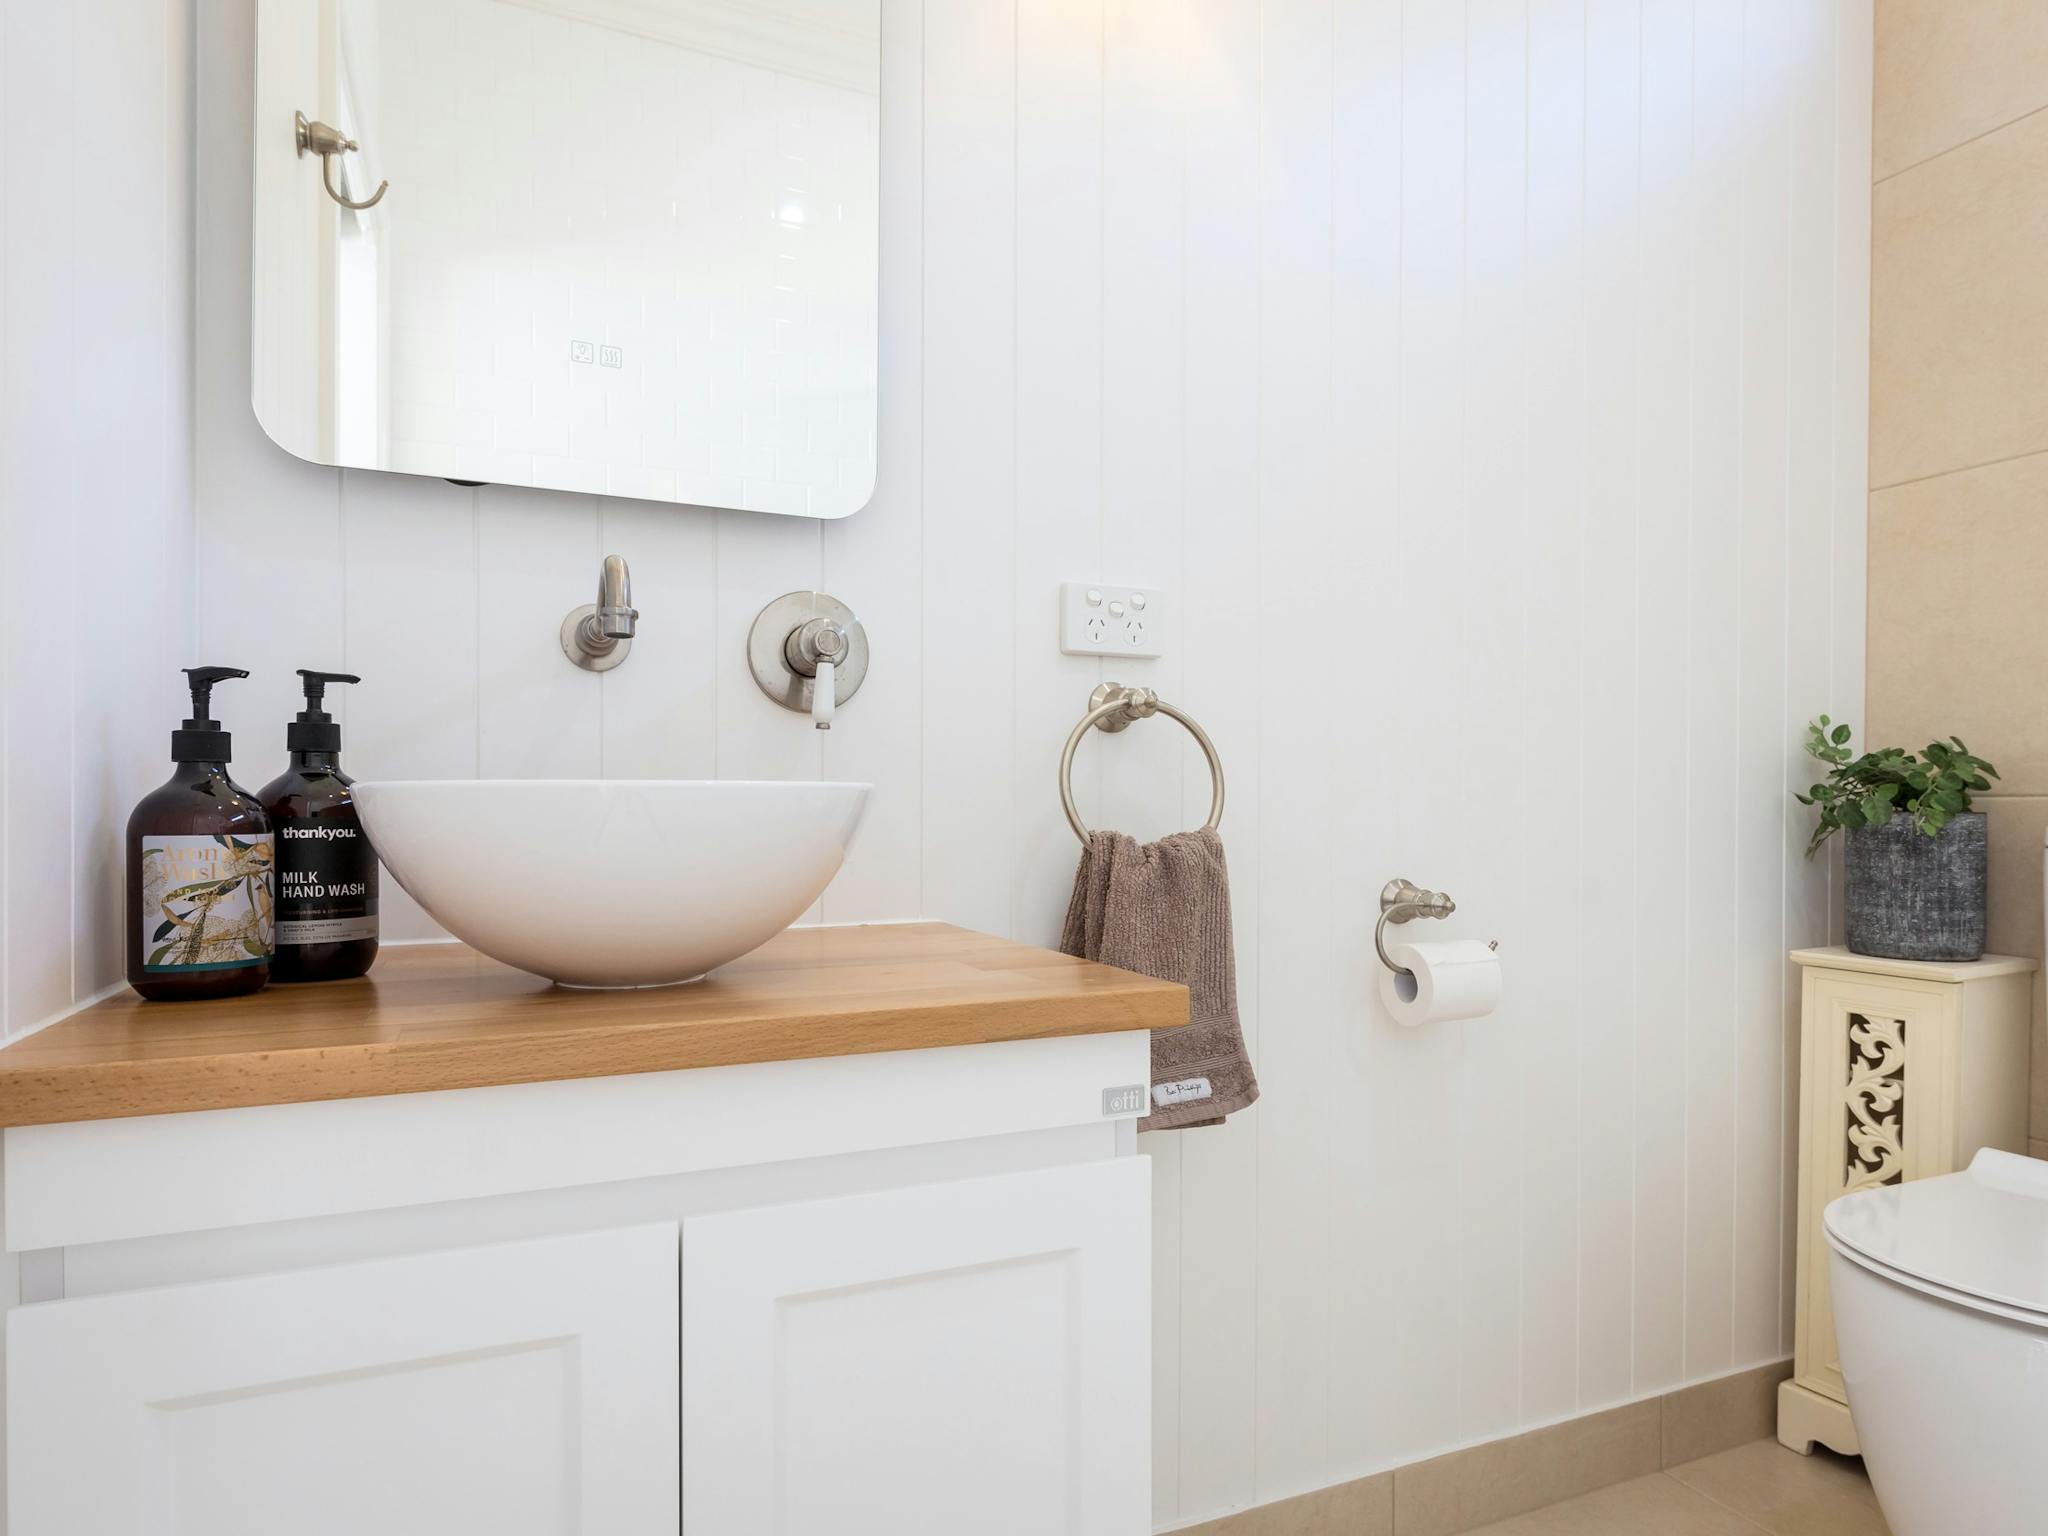 Bathroom, floating vanity, sink on vanity, tap, mirror, hand towel, soap dispensing bottle